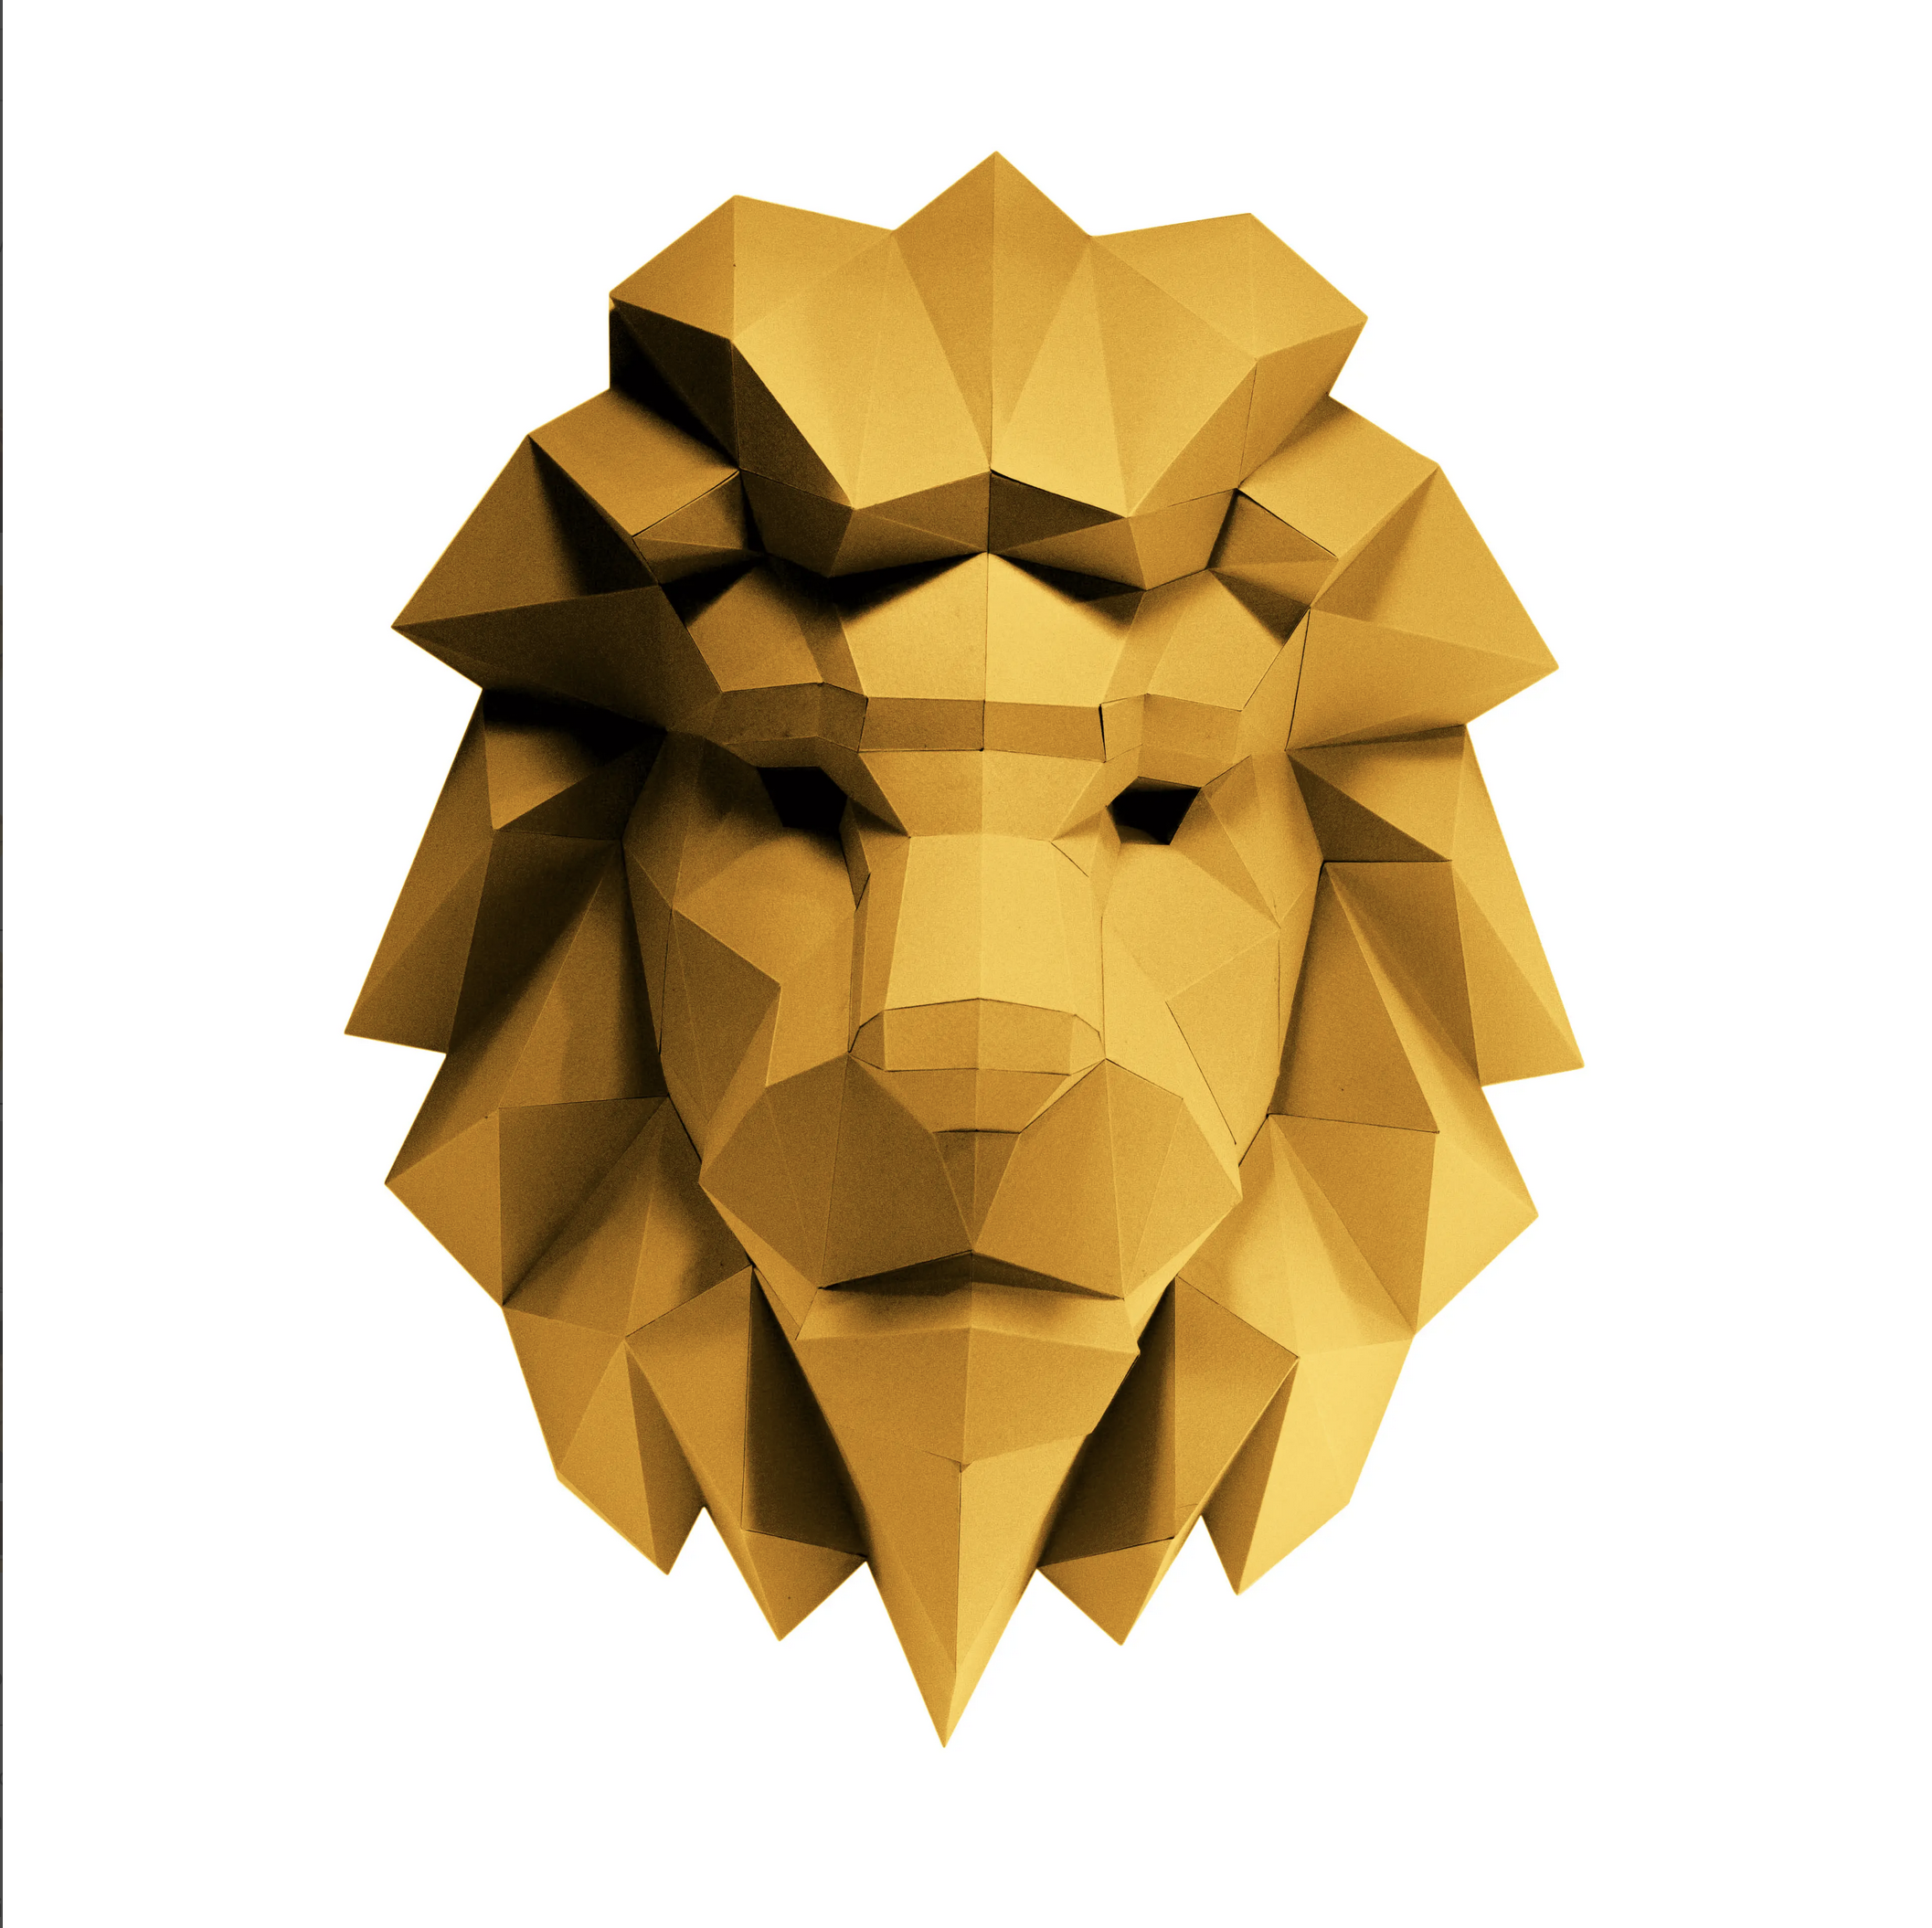 Papercraft World 3D Papercraft Wall Art Diy Kit Lion Head